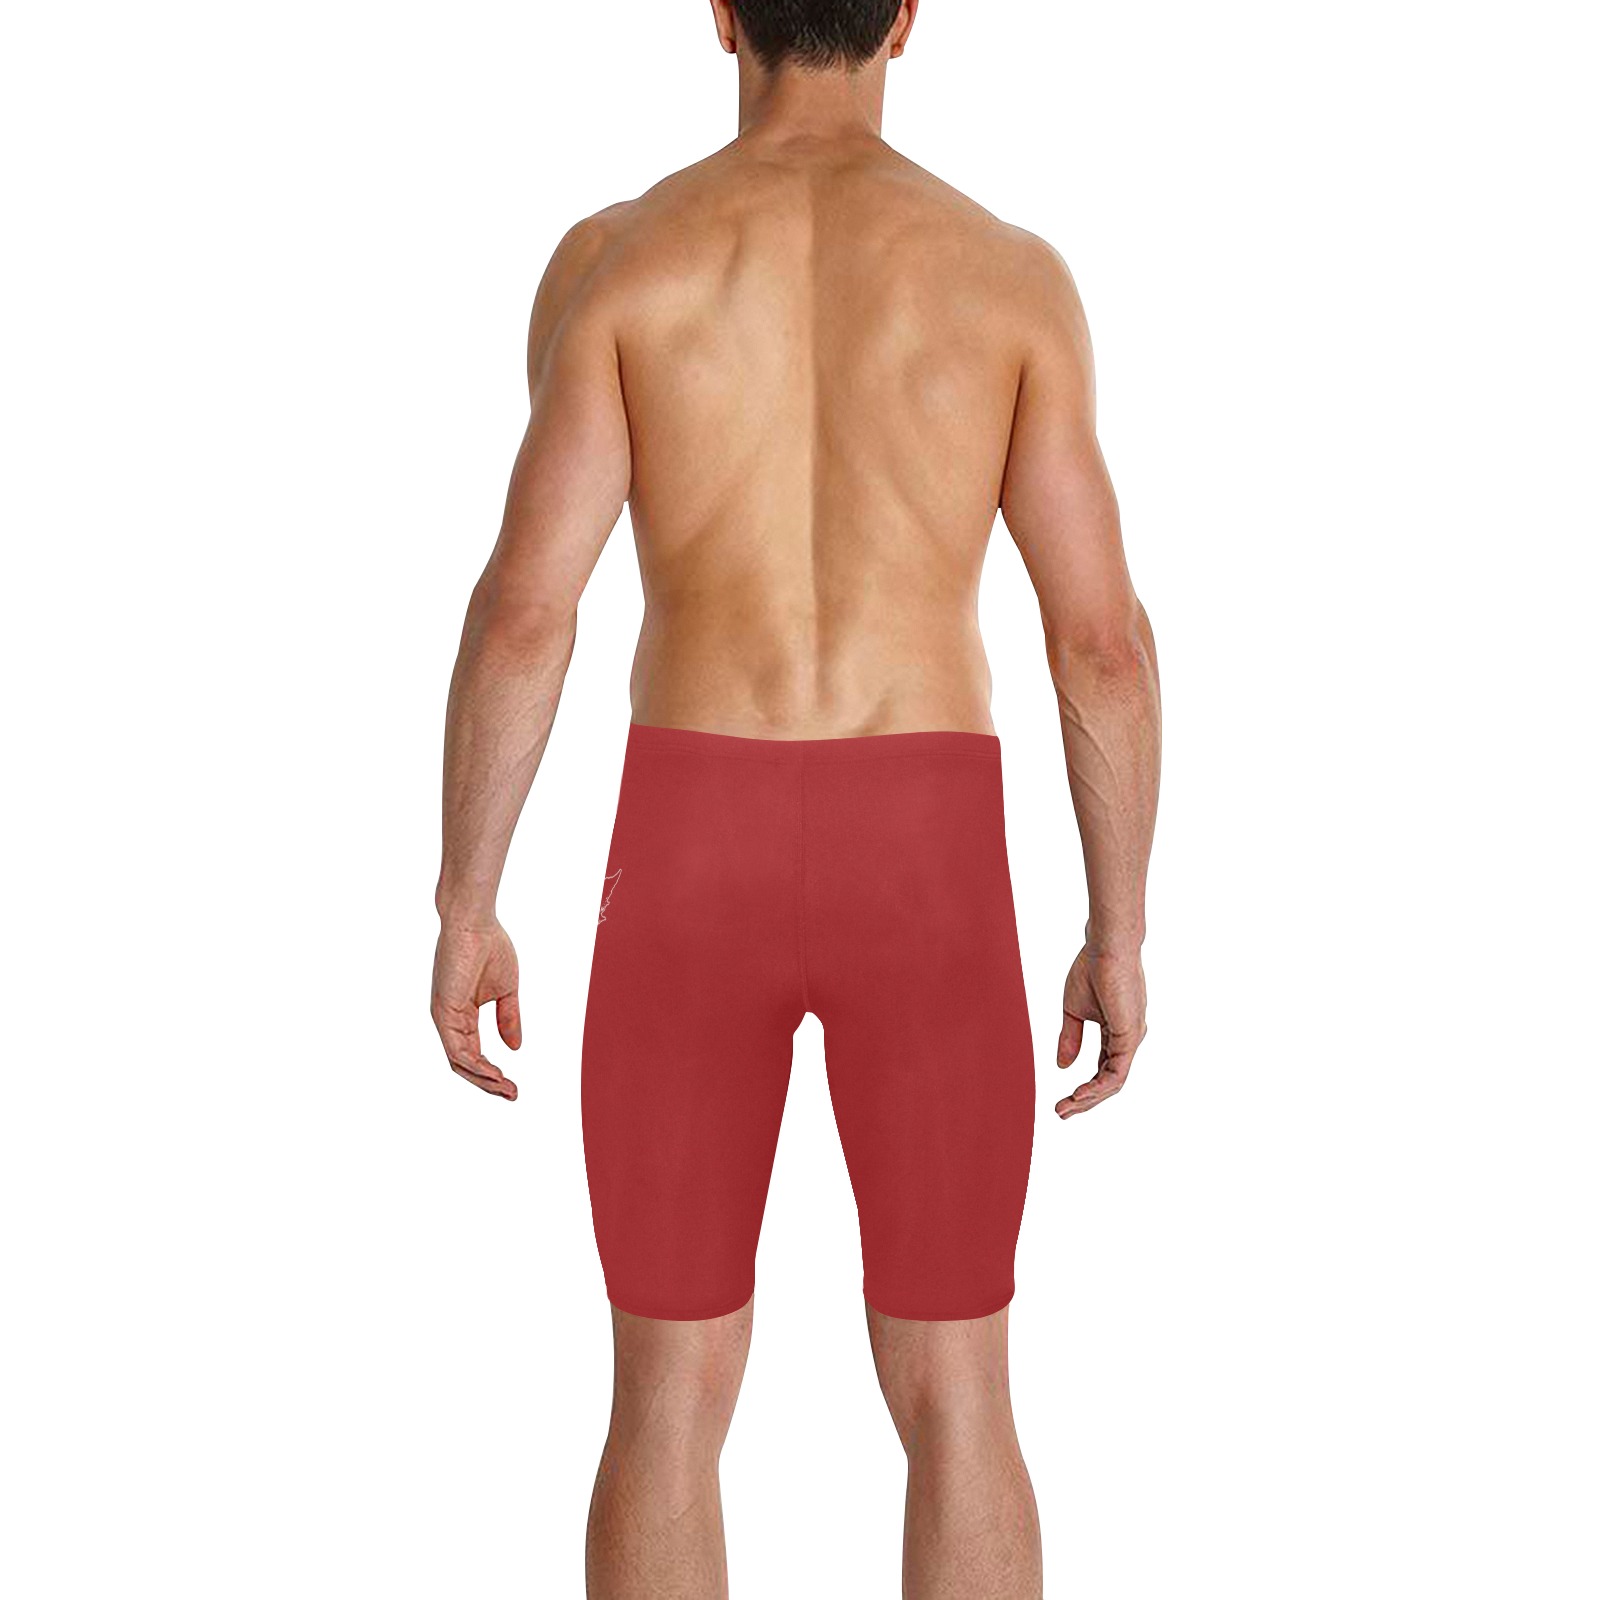 Cool Canada Flag Swim Shorts Men's Knee Length Swimming Trunks (Model L58)